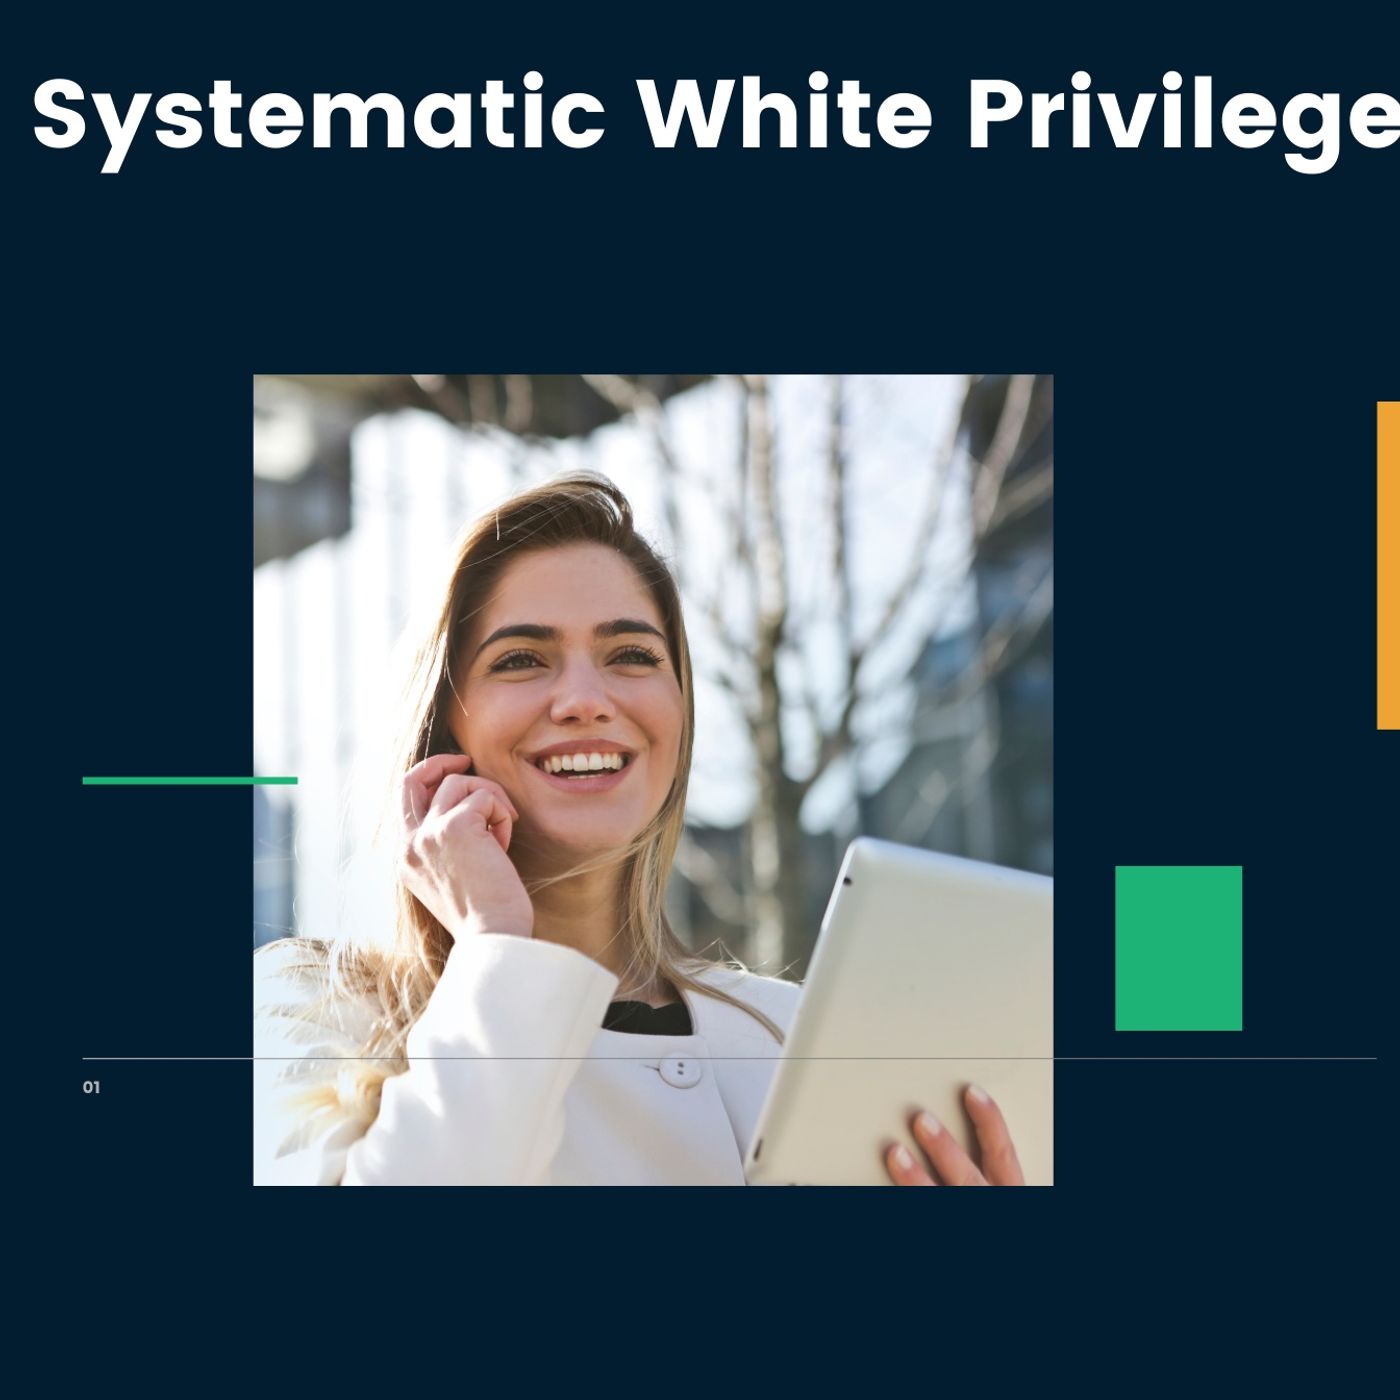 Systemic White Privilege